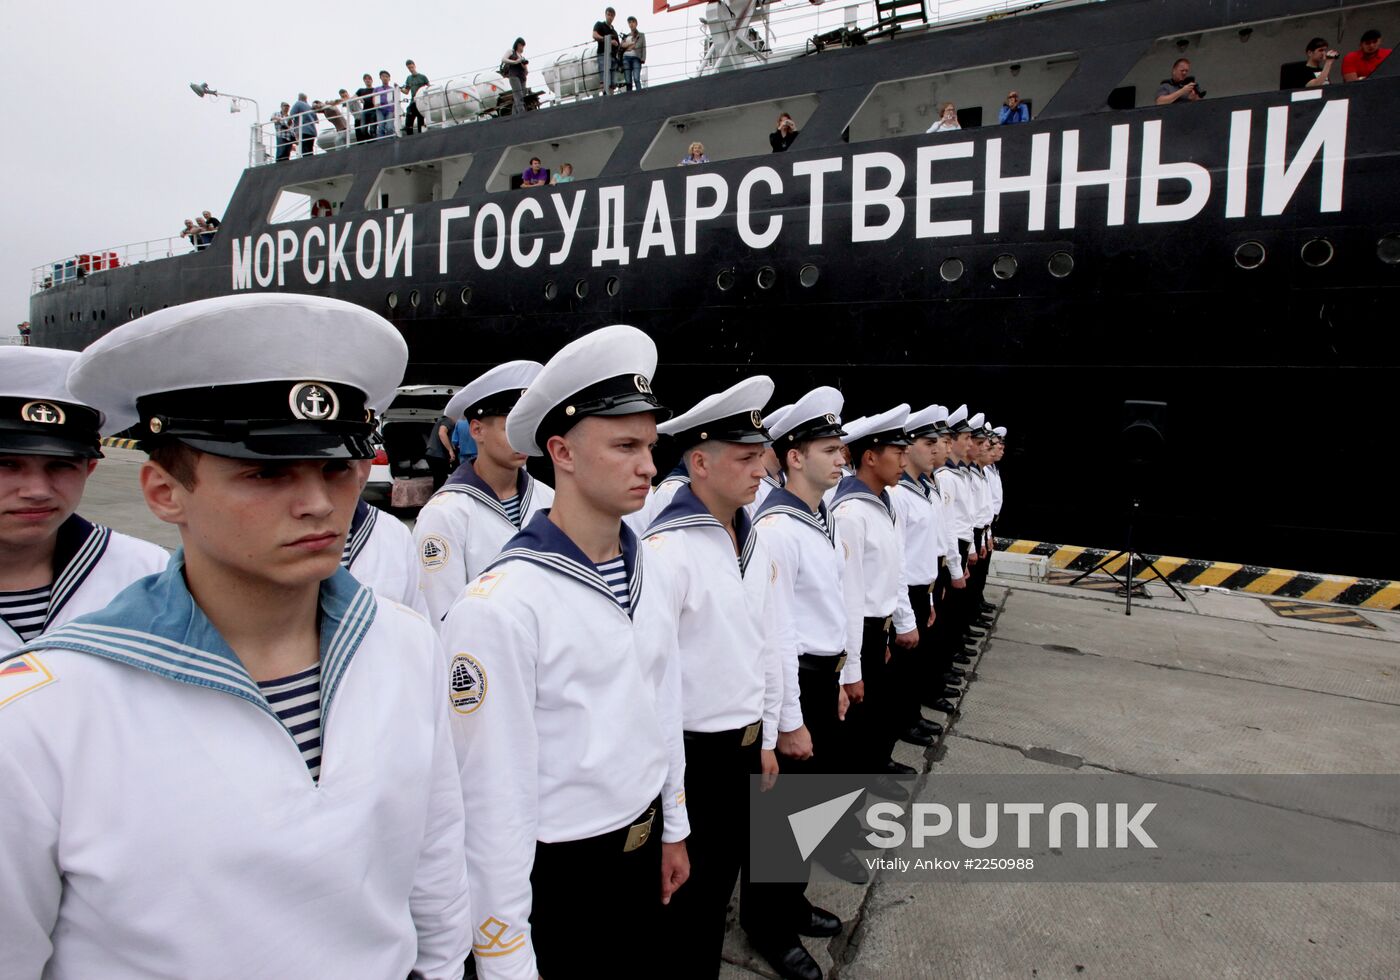 Vladivostok says goodbye to Professor Khlyustin ship